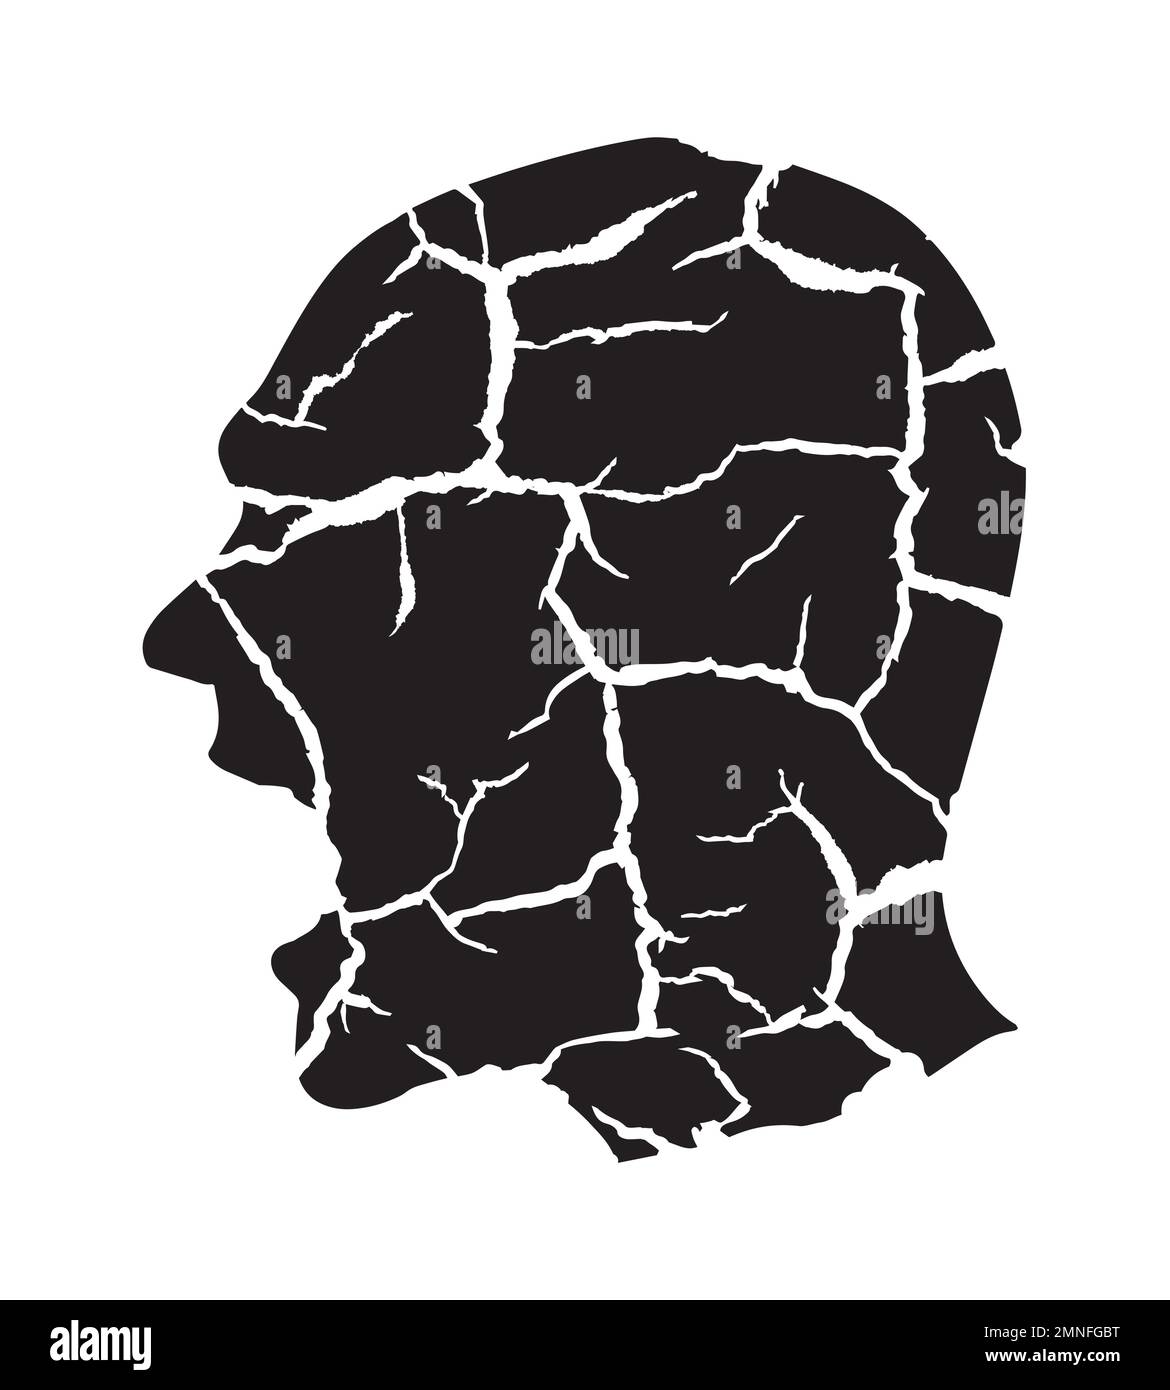 Schwarze Silhouette eines schreienden verzweifelten Mannes, rissige Erdstruktur. Ausdrucksstarke stilisierte Illustration eines wütenden Mannes. Vektor verfügbar. Stock Vektor